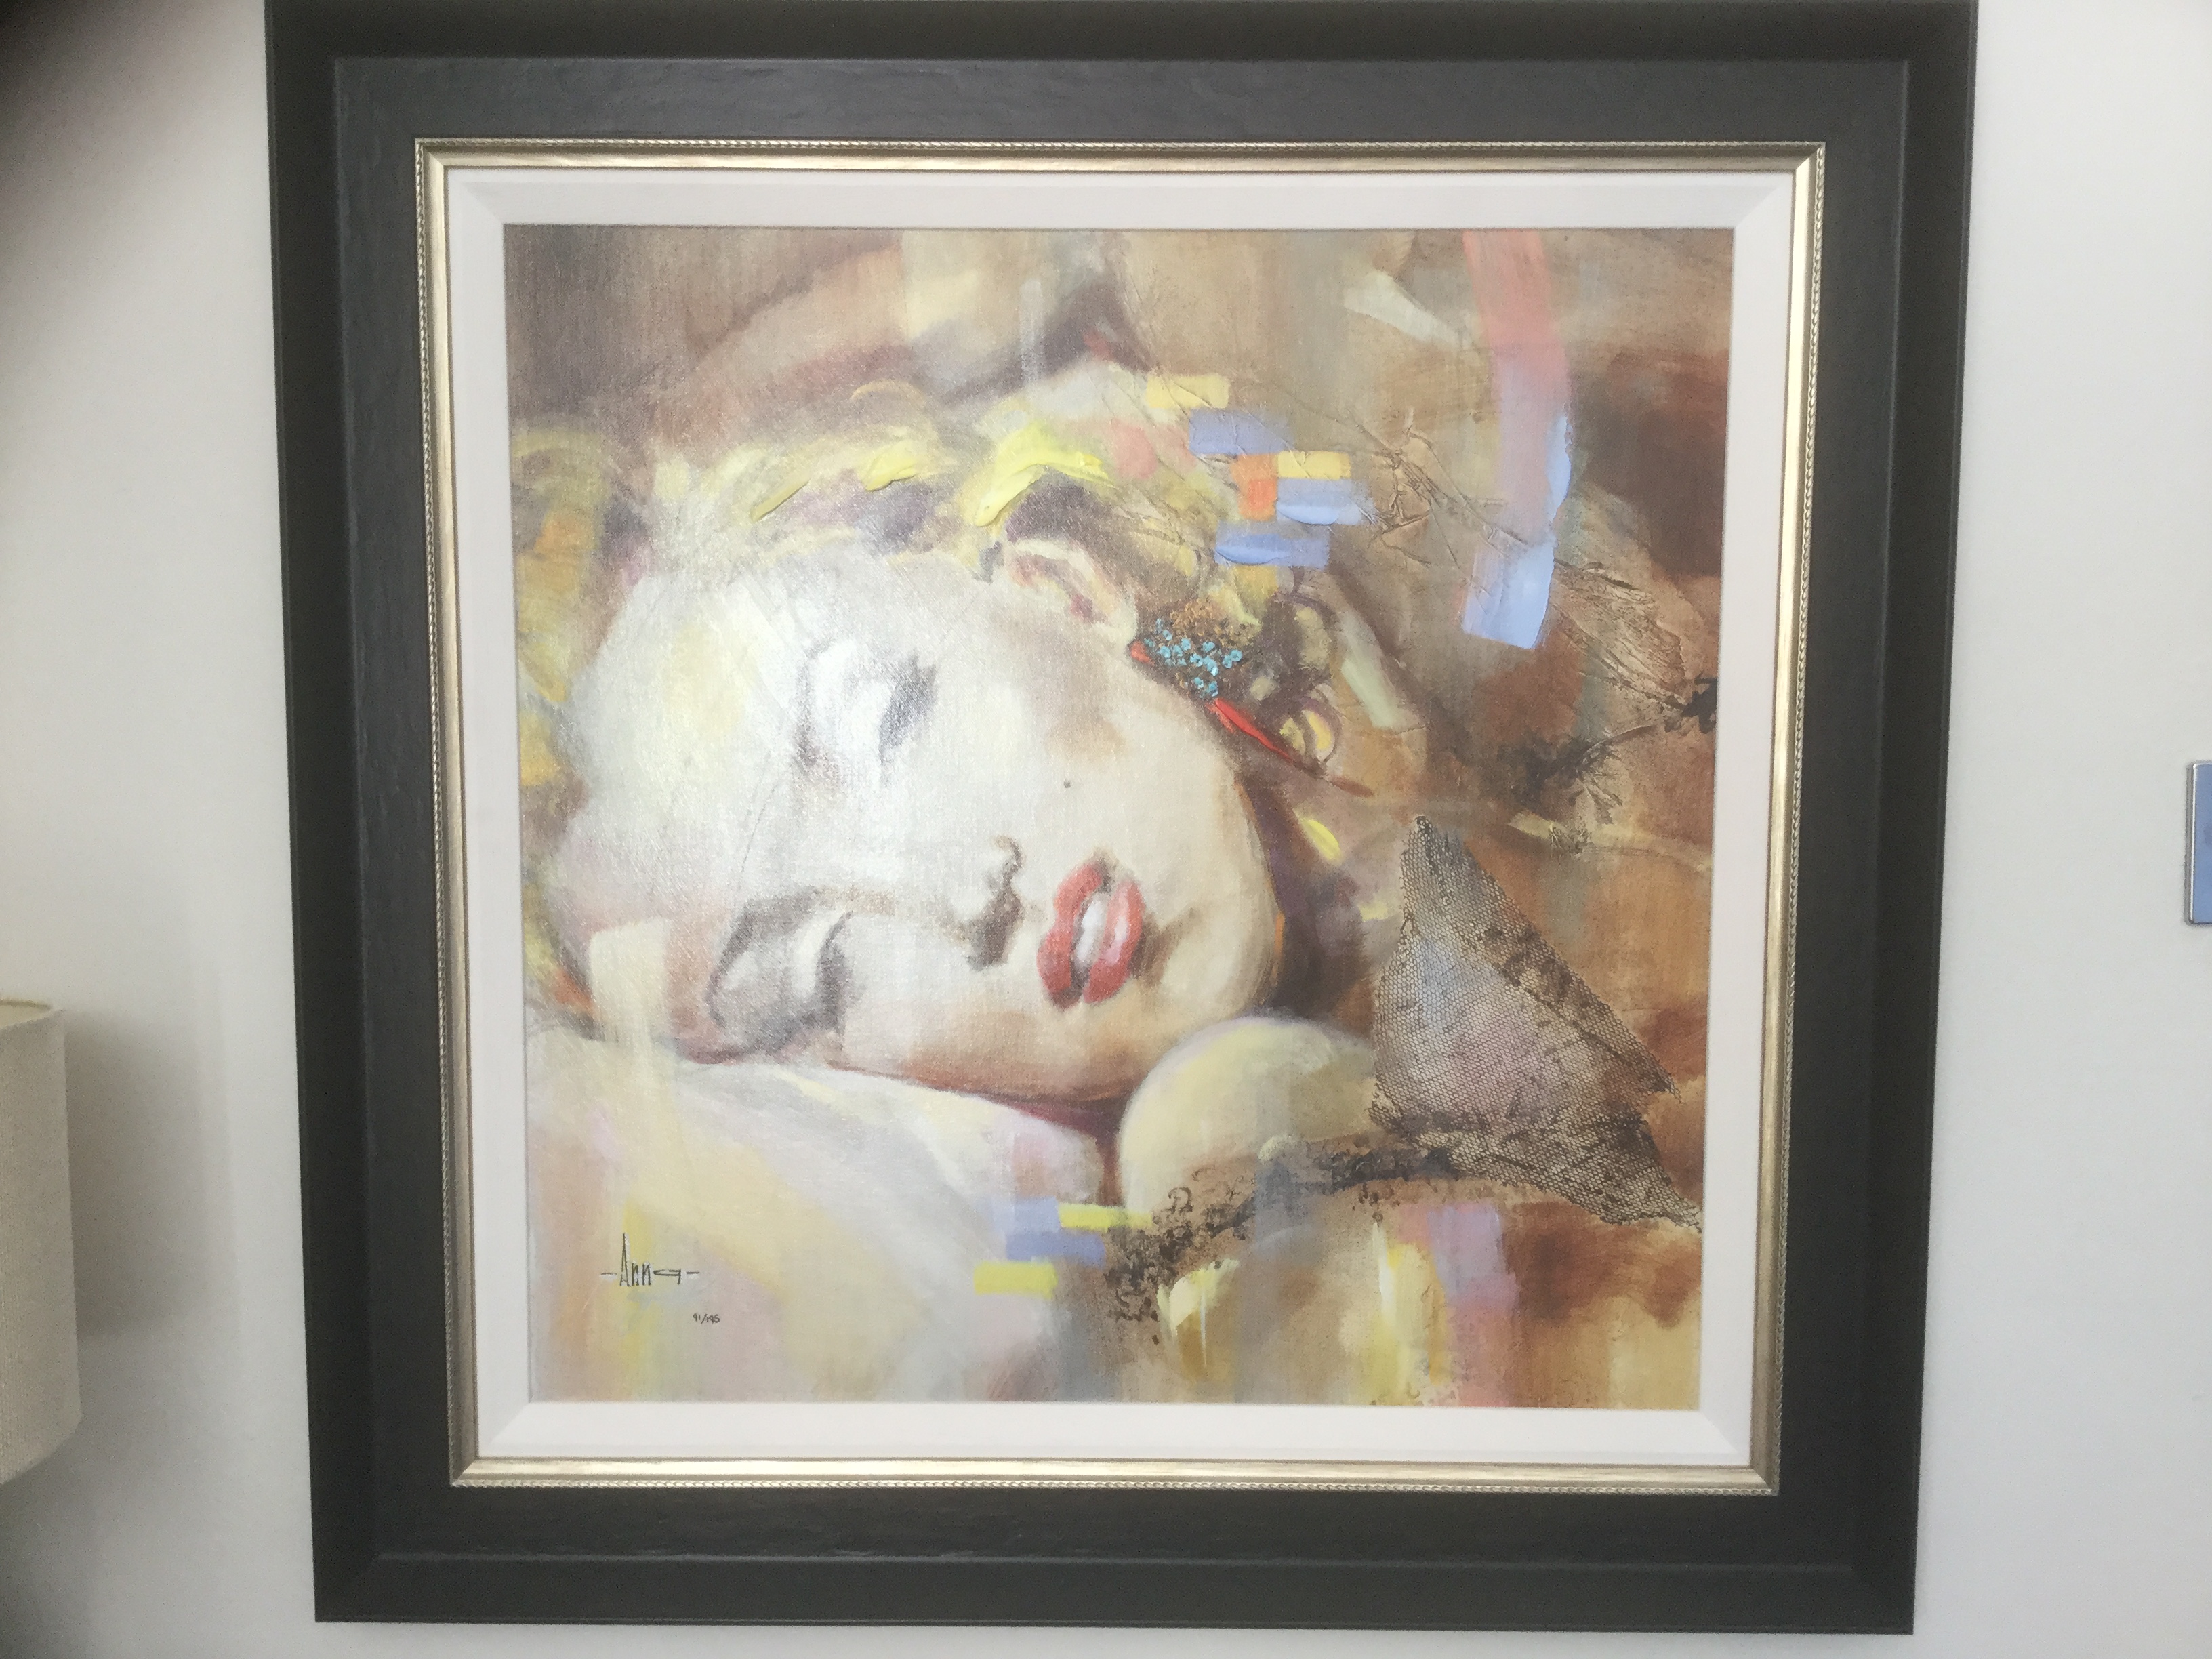 Marilyn's Dream by Anna Razumovskaya - A Best Buy Item 